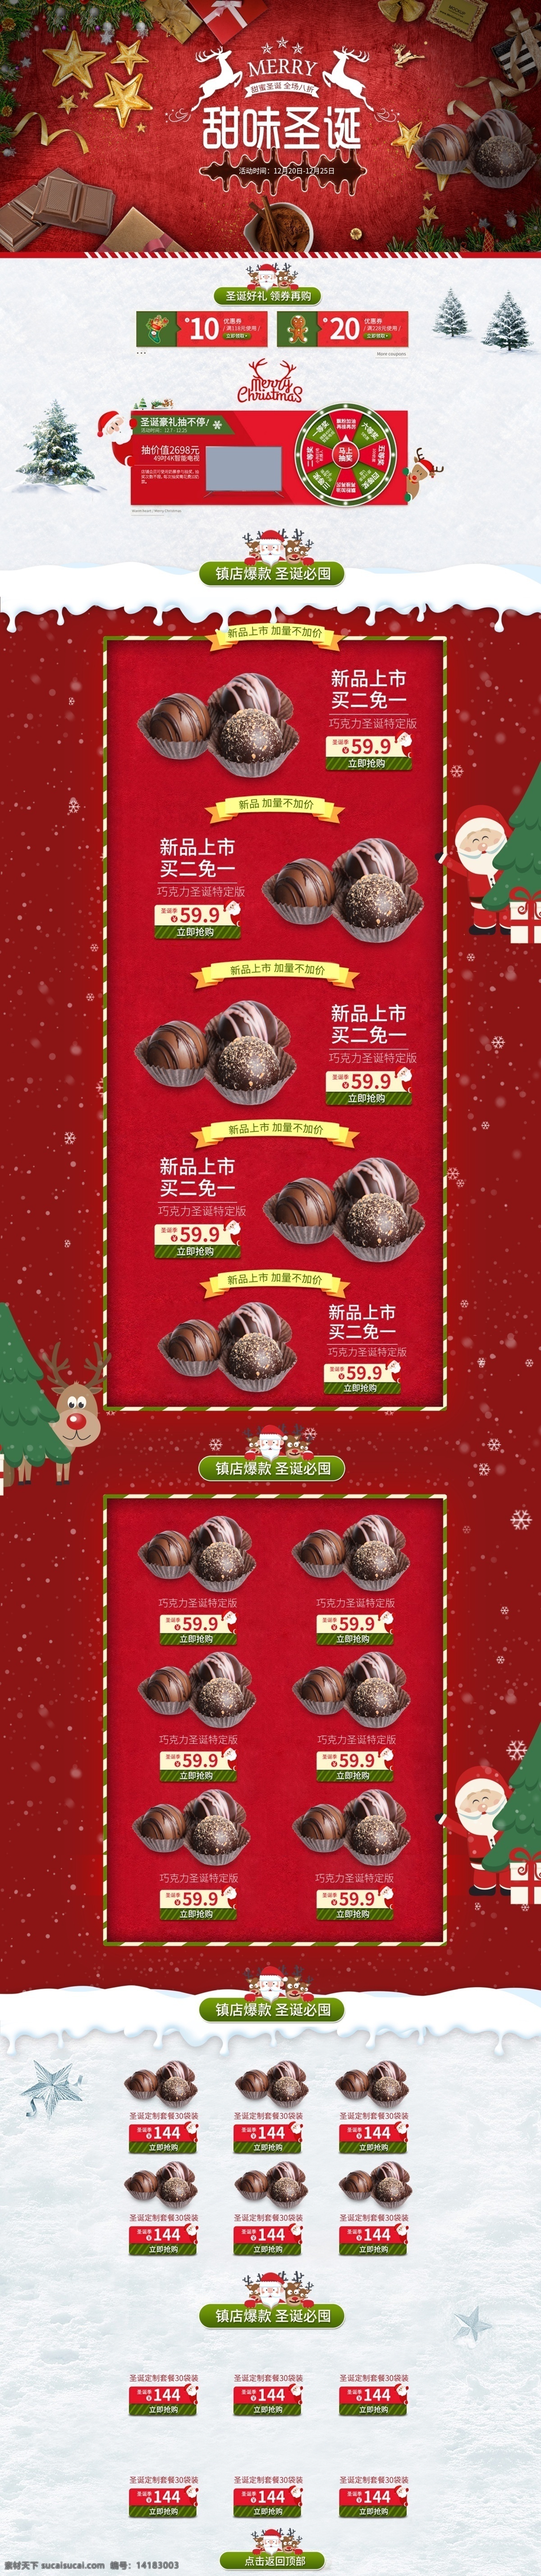 淘宝 红色 喜庆 巧克力 圣诞节 首页 淘宝首页 红色喜庆页面 巧克力首页 圣诞节首页 首页模板 食品